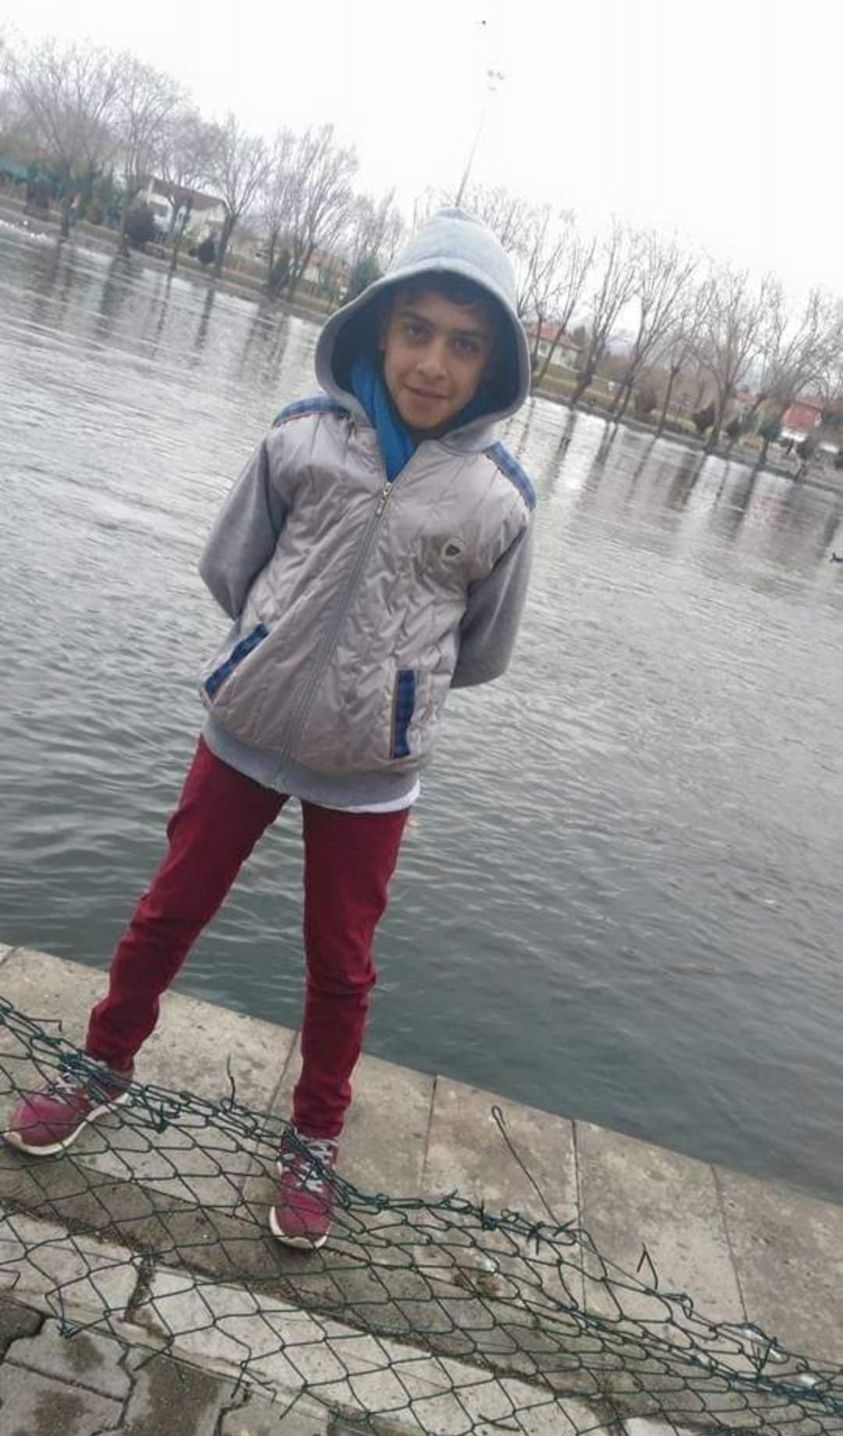  14 yaşındaki çocuk, av tüfeğinin kazara ateş alması sonucu hayatını kaybetti